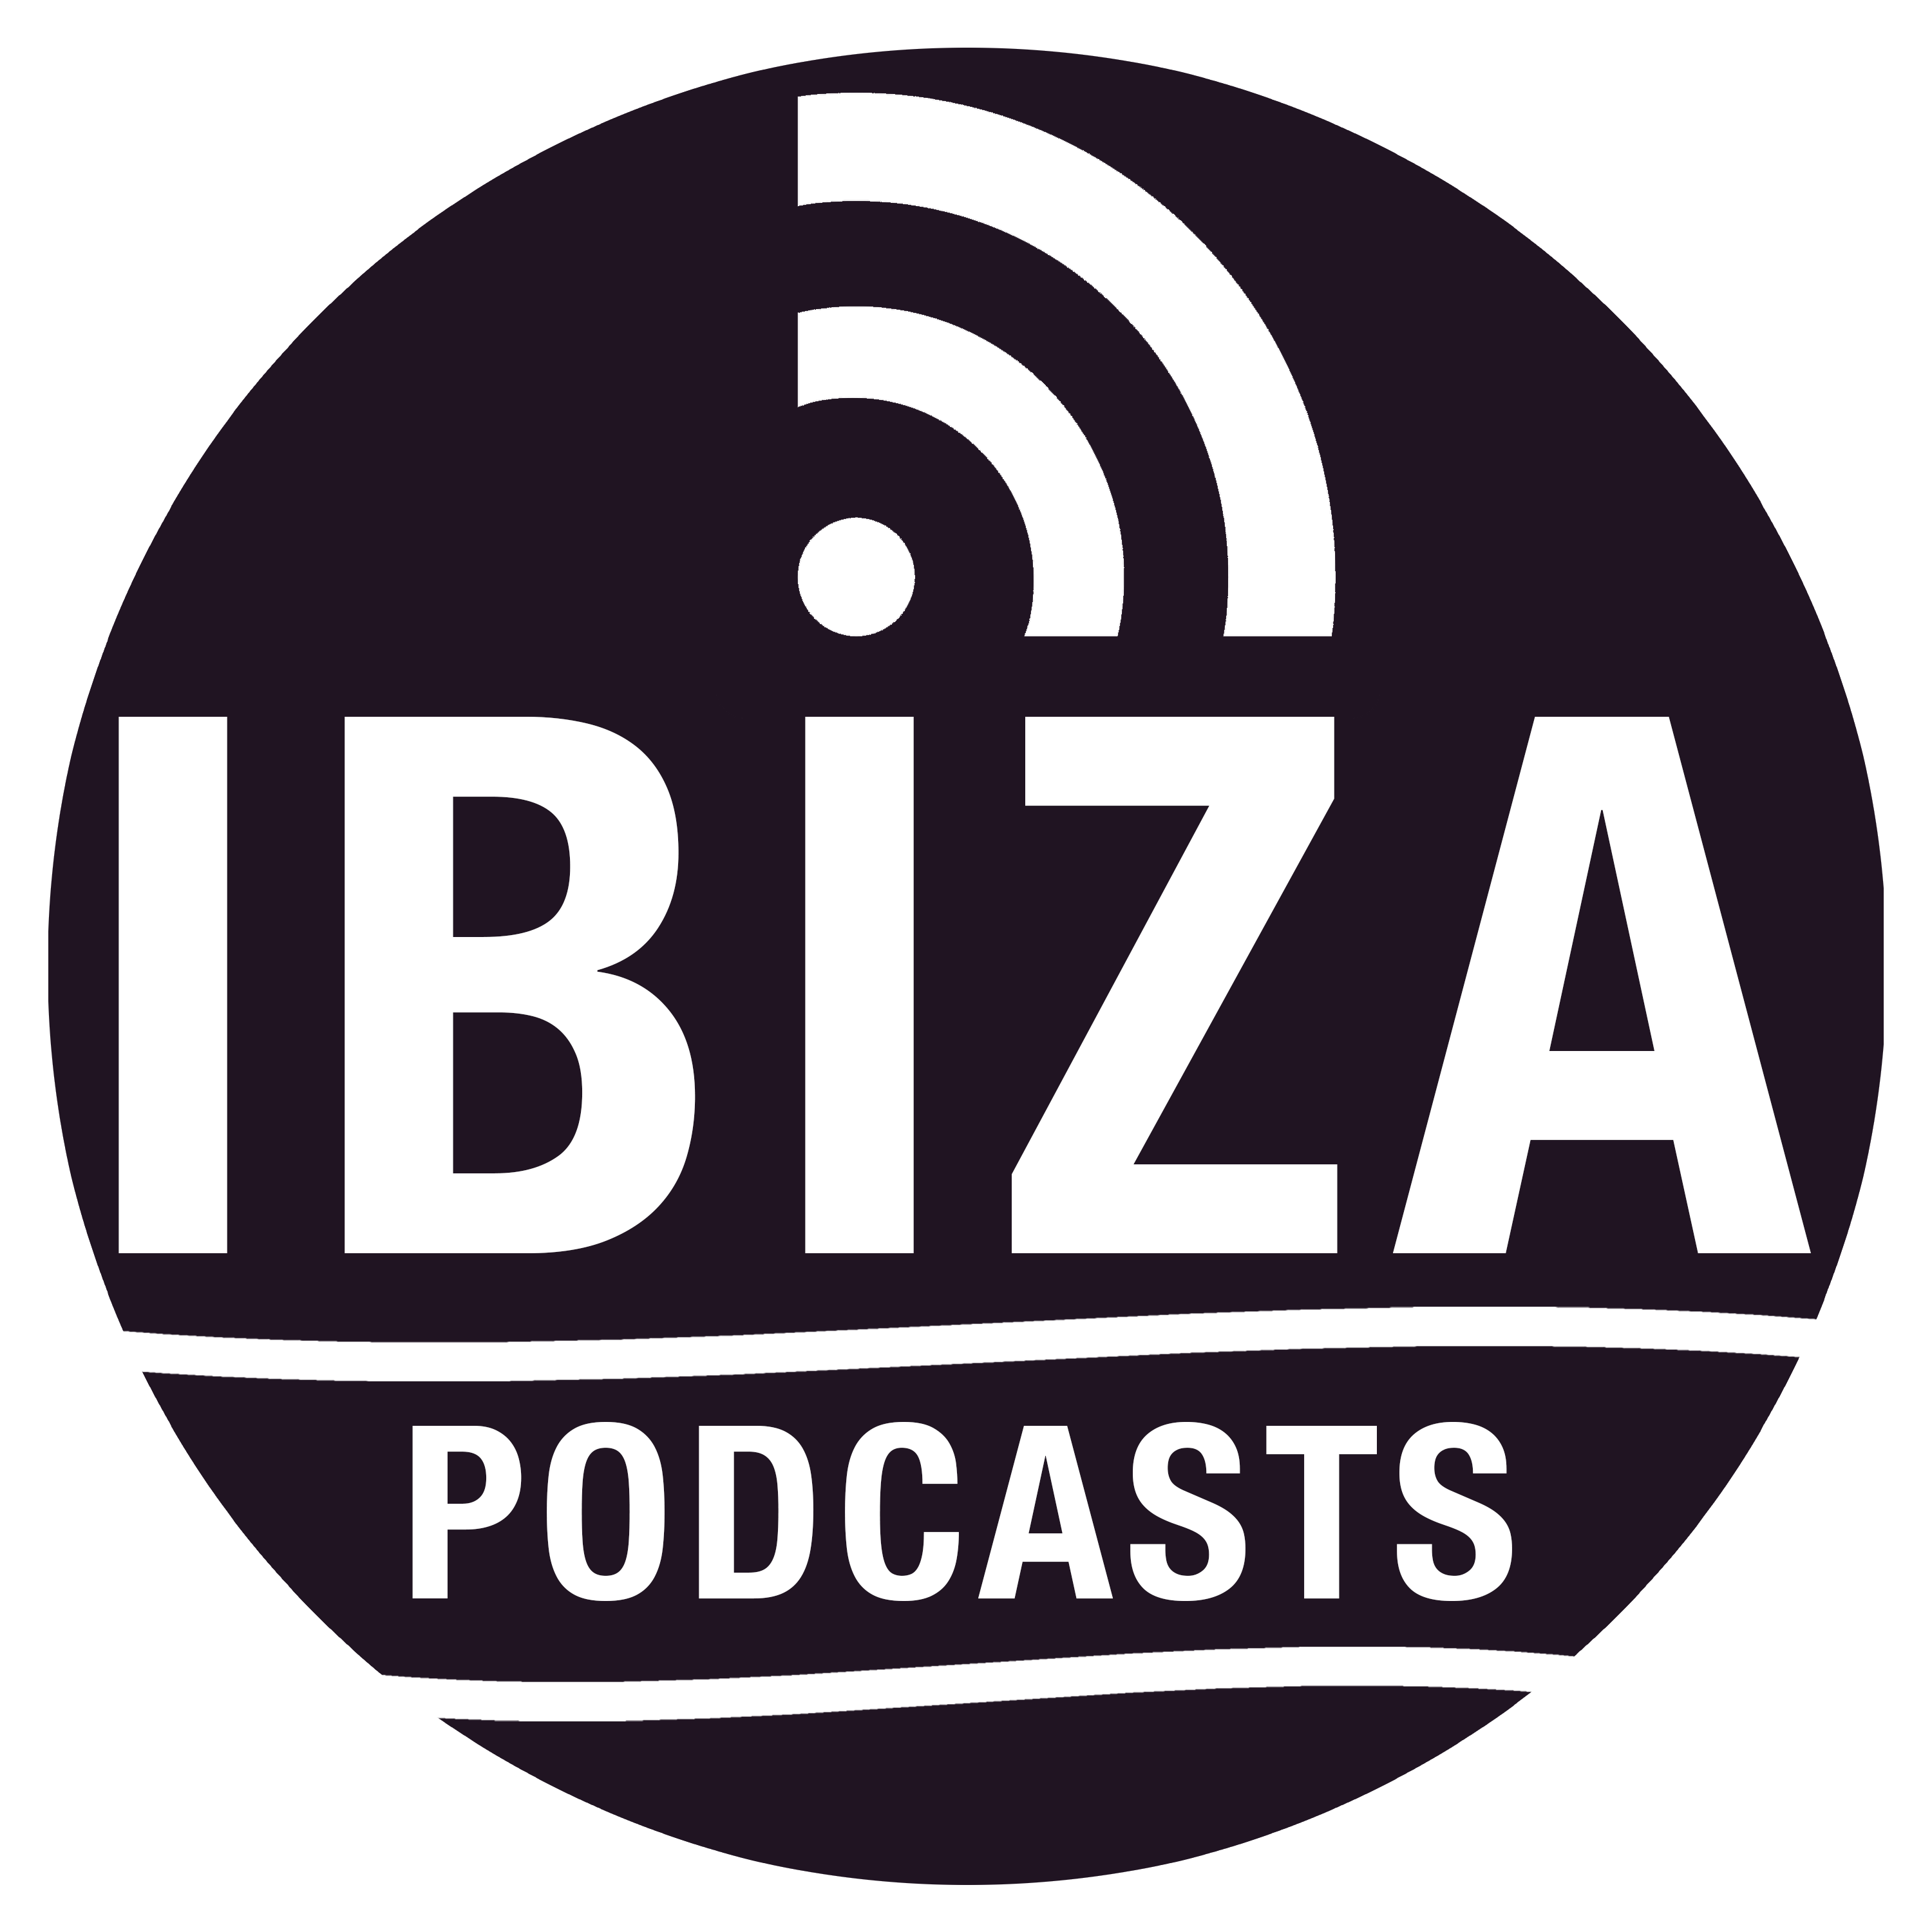 Ibiza Podcasts